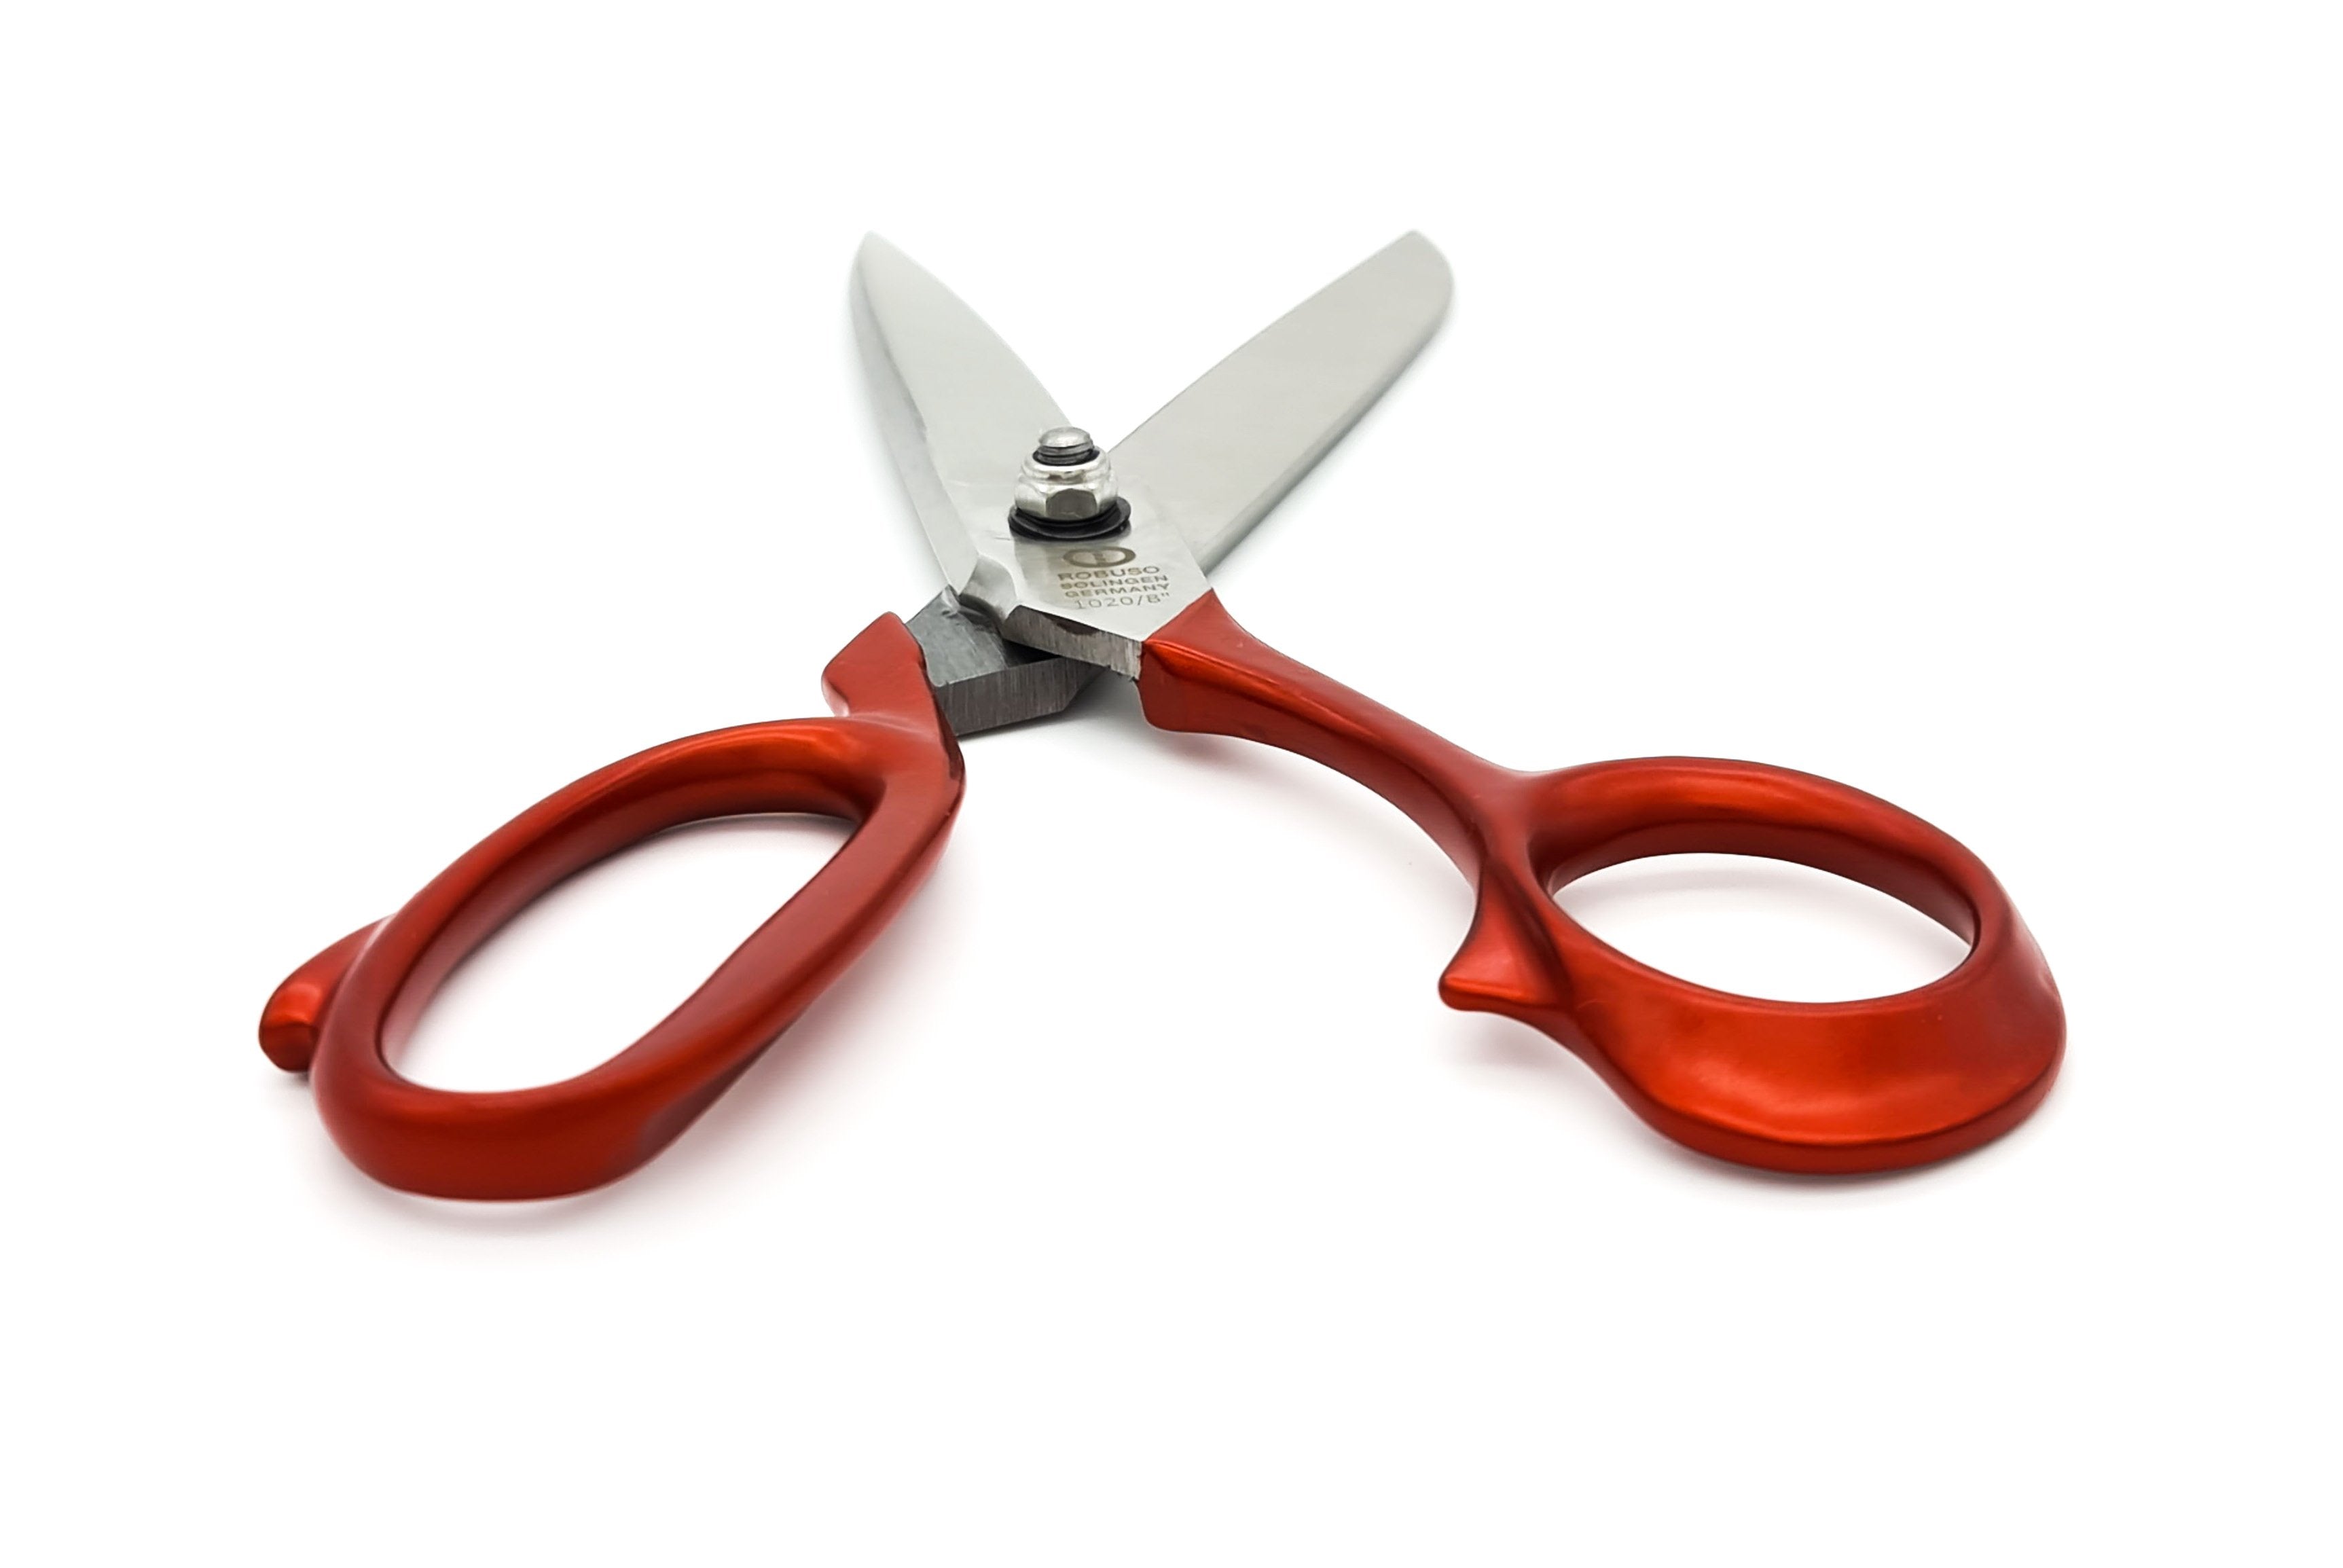 Tailor scissors, 8" / 21 cm